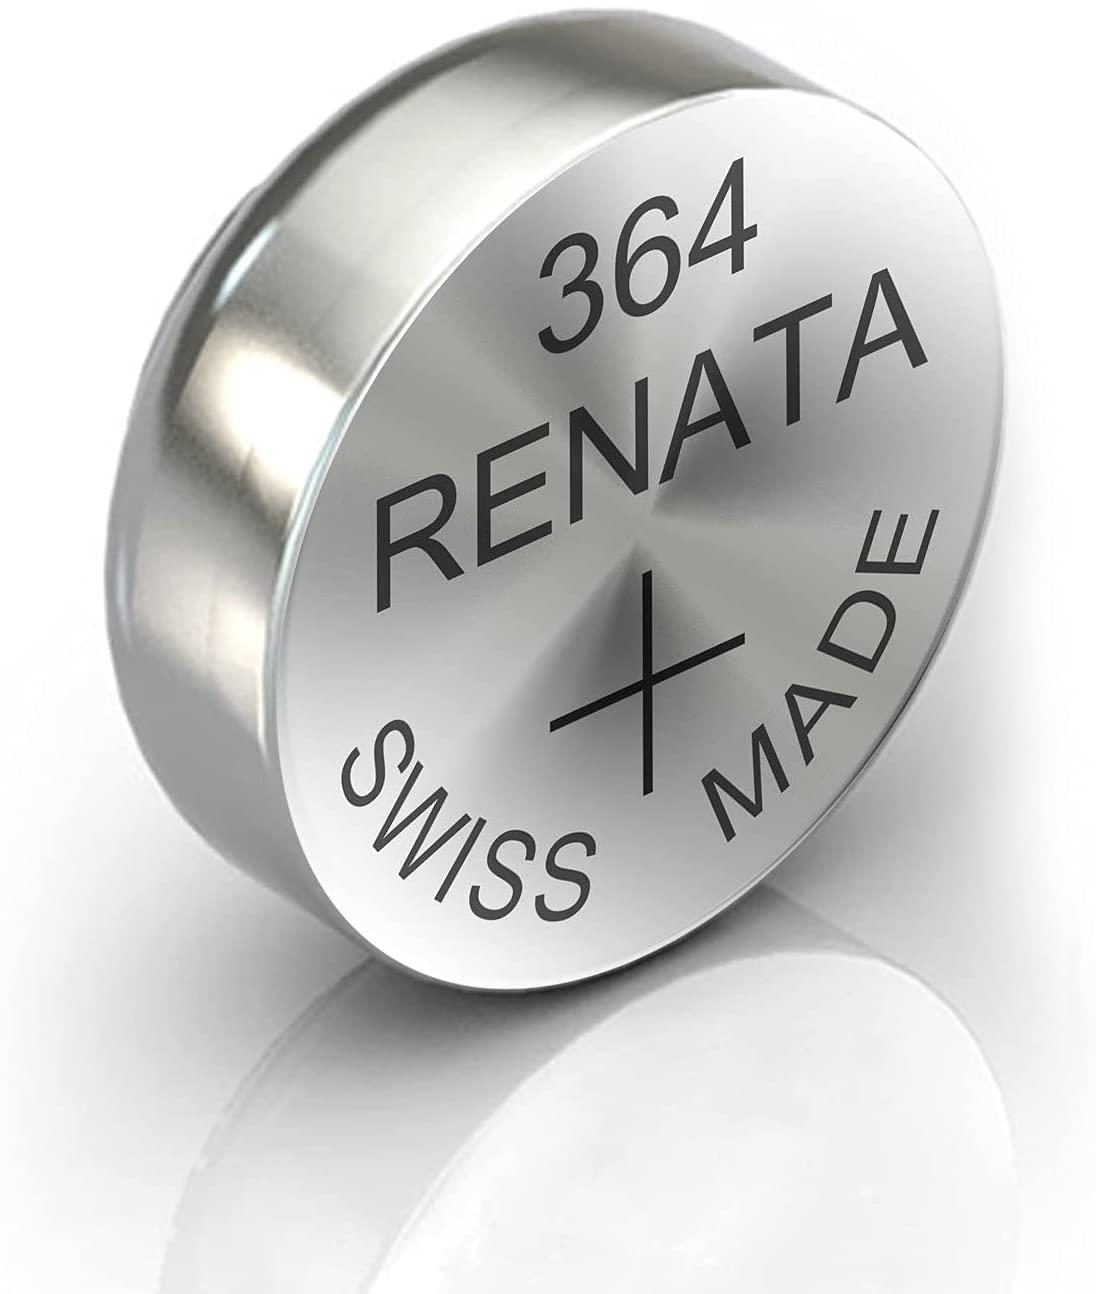 Батерија копче renata 364 sr621sw